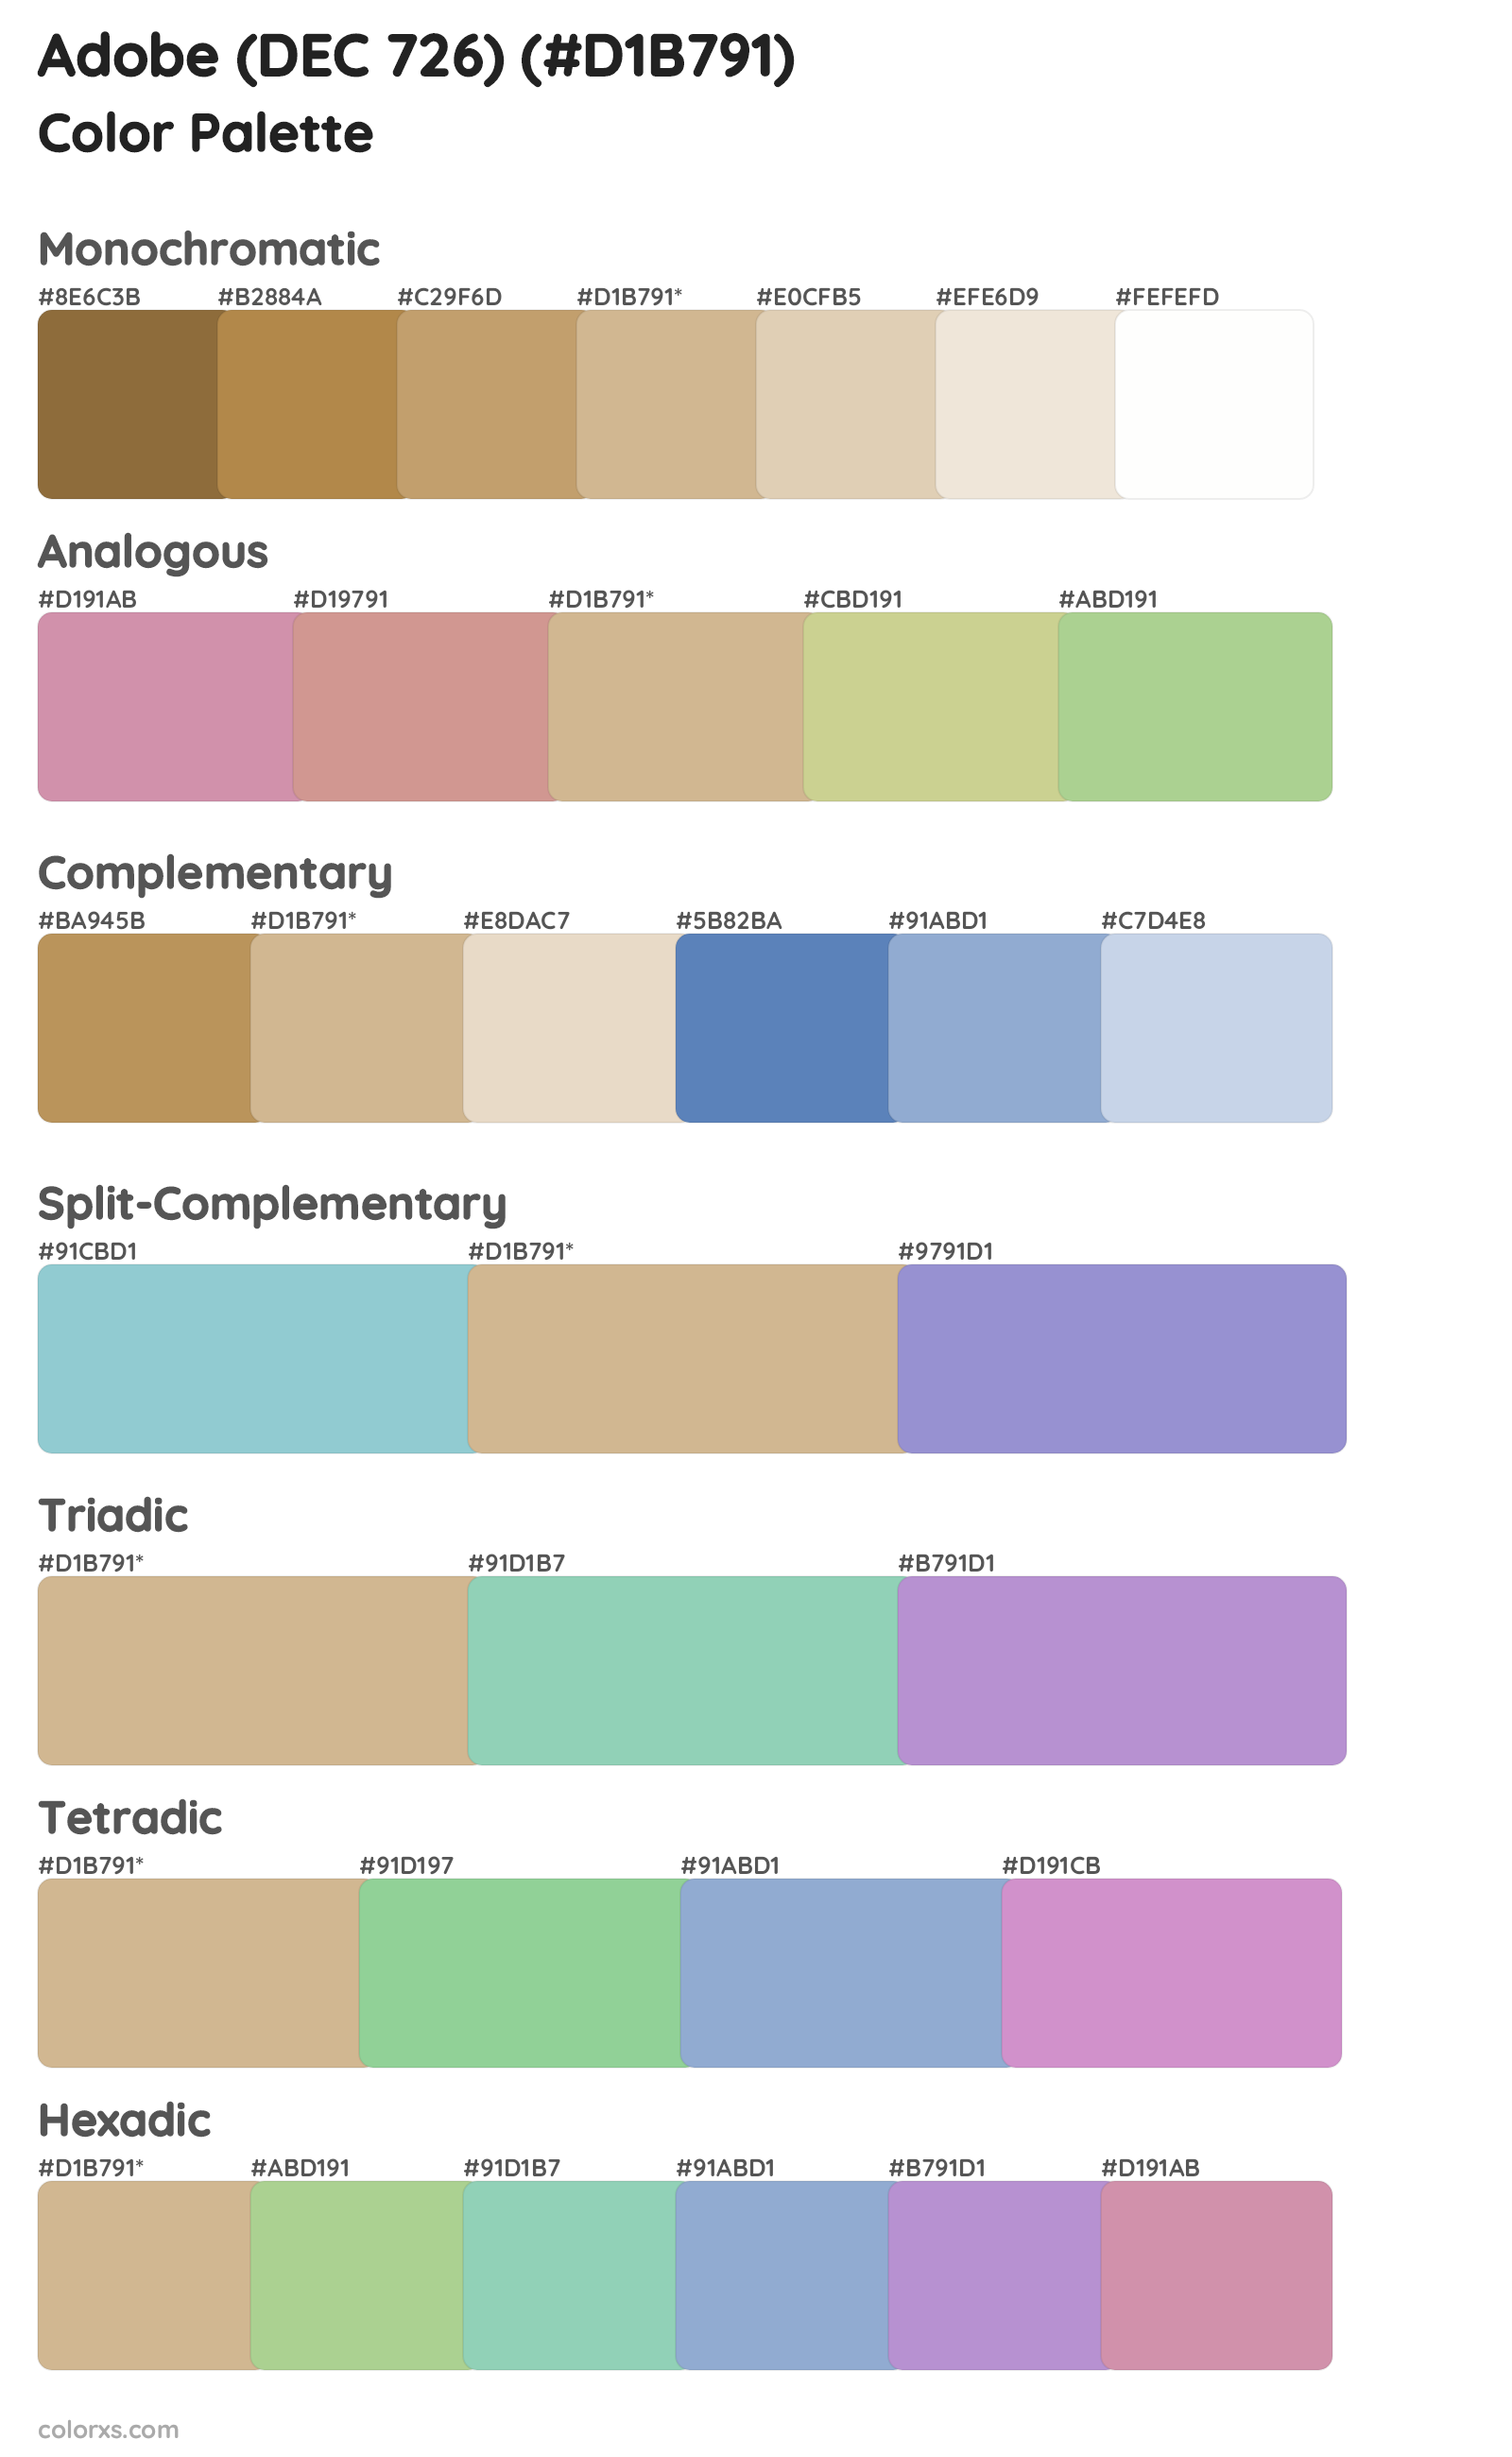 Adobe (DEC 726) Color Scheme Palettes